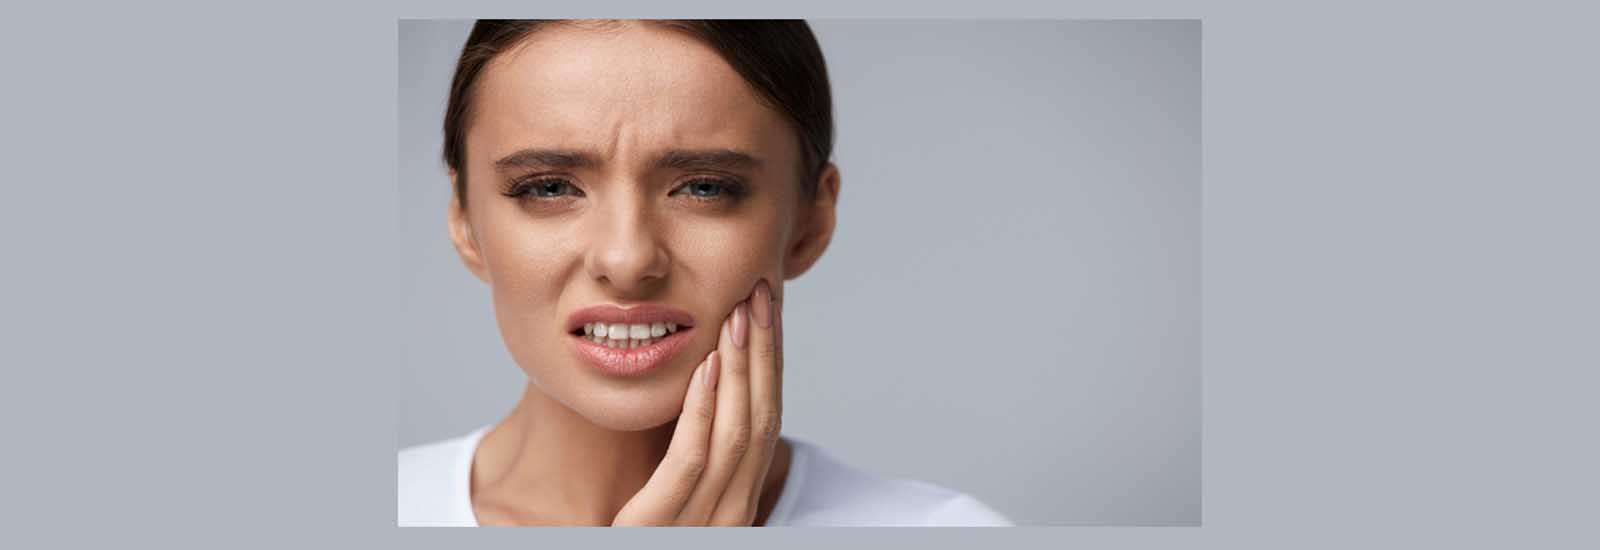 दांतों का दर्द दूर करने के घरेलू उपचार |